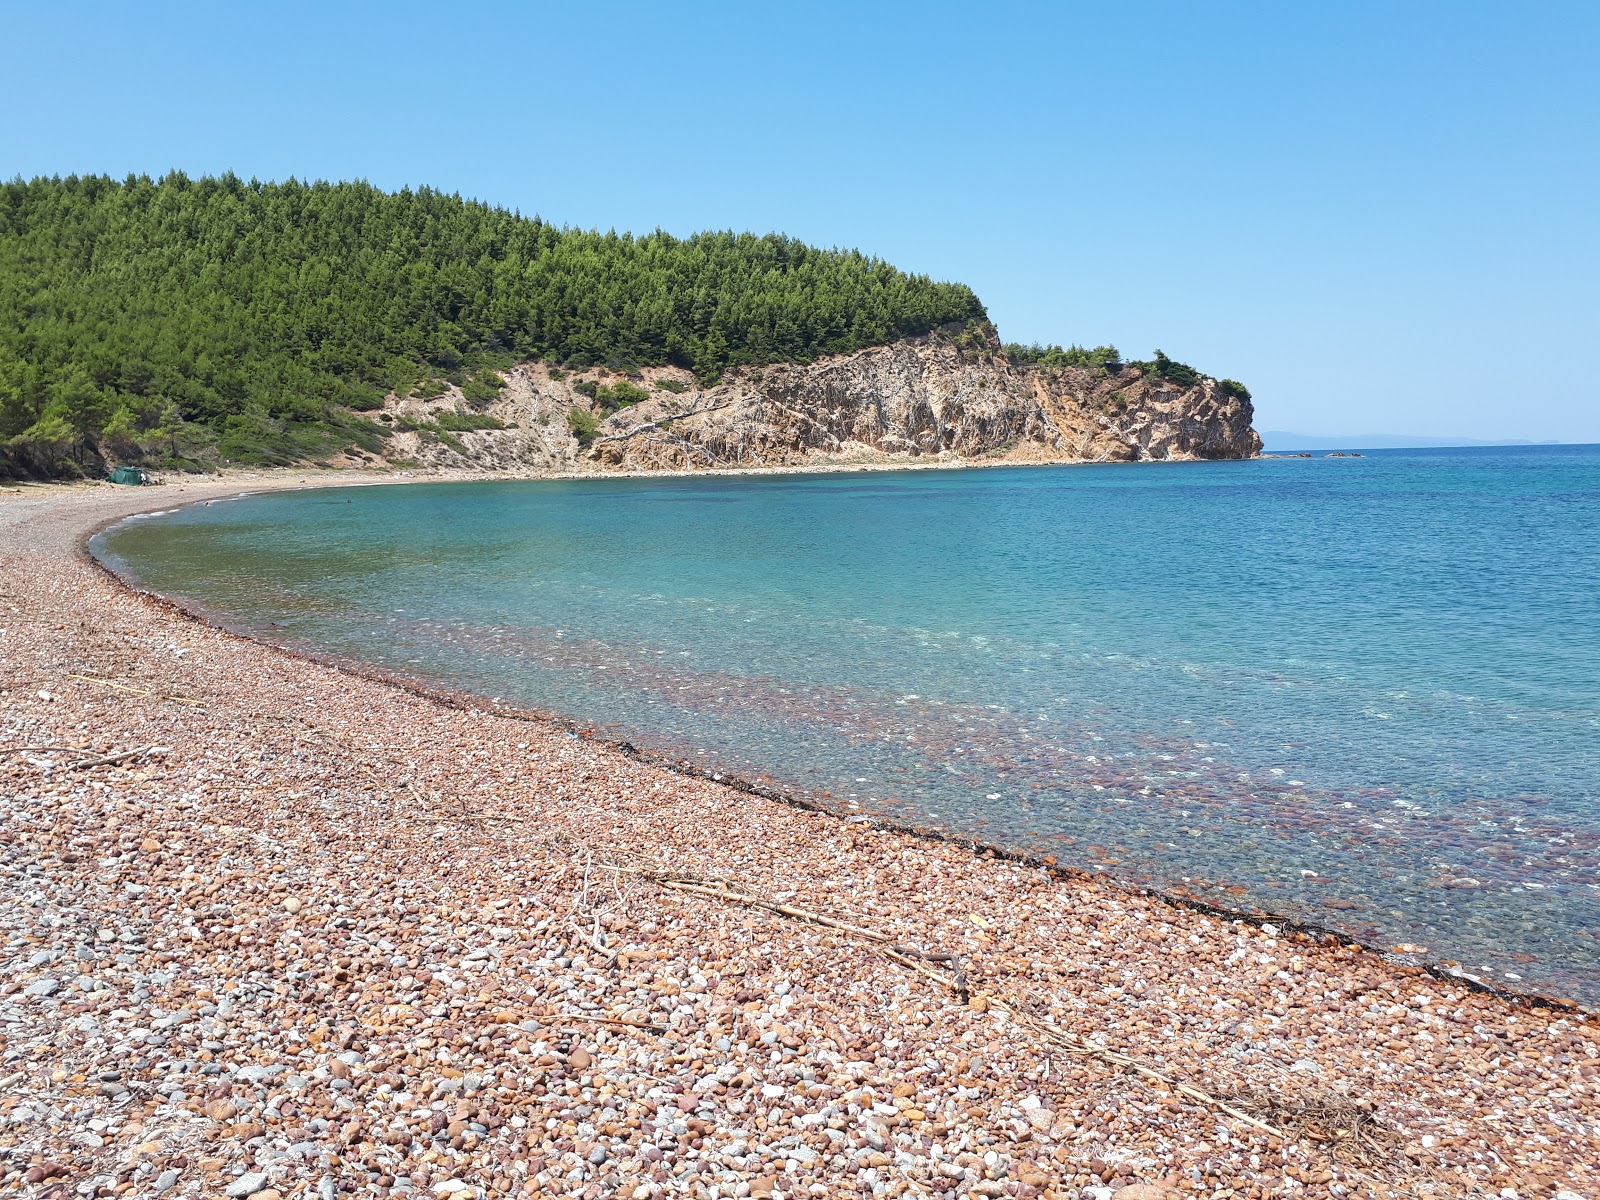 Mourtias beach'in fotoğrafı siyah kum ve çakıl yüzey ile